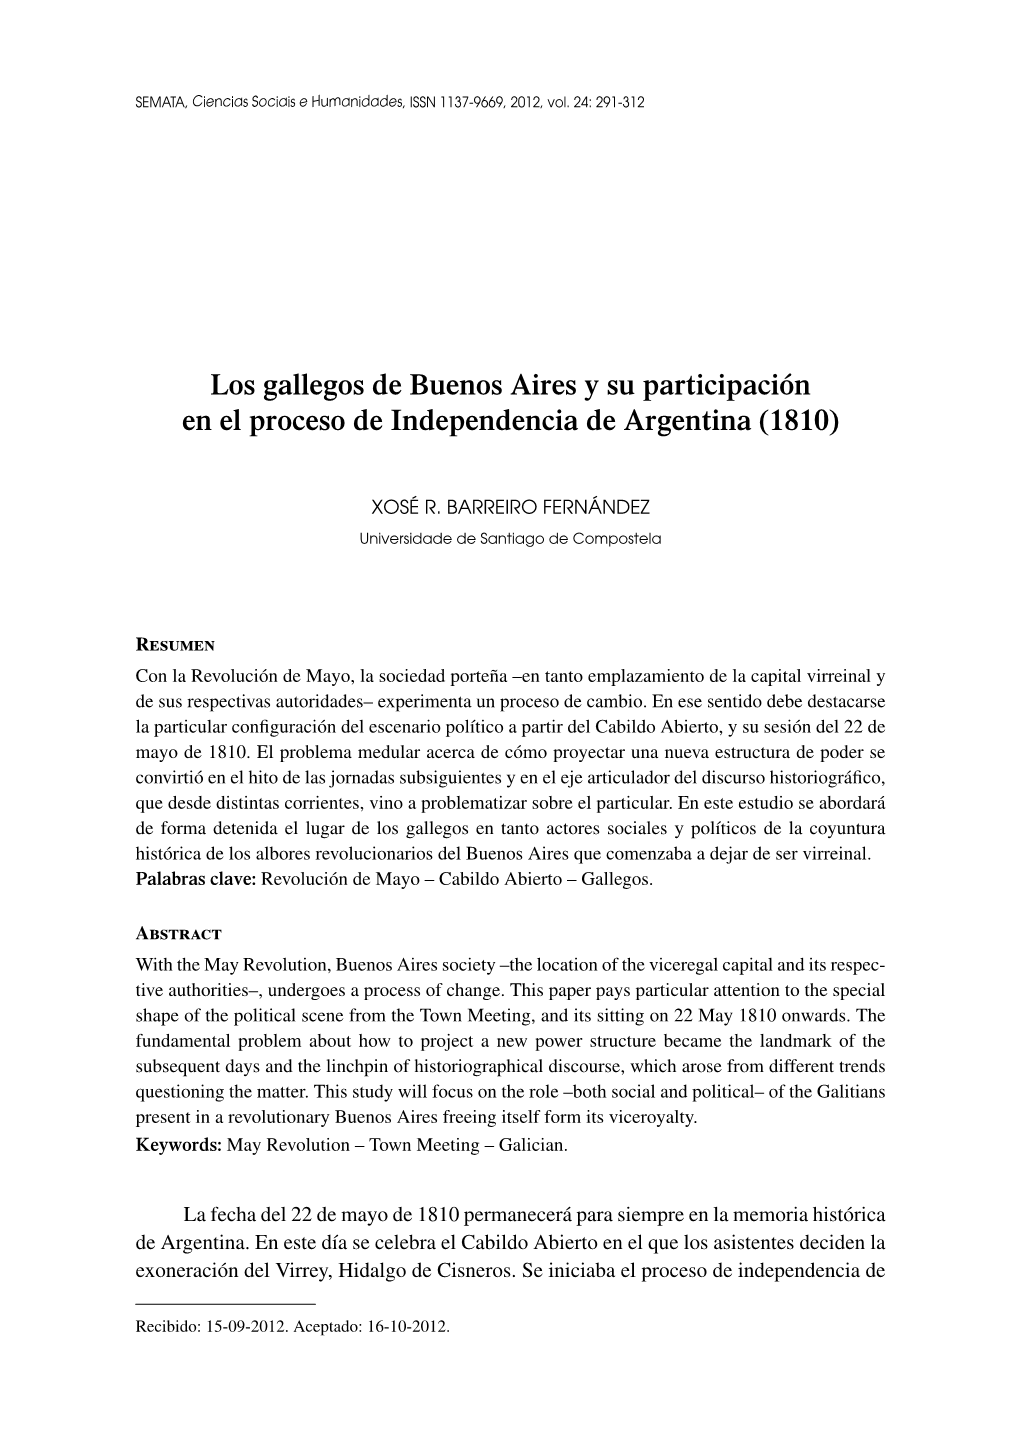 Los Gallegos De Buenos Aires Y Su Participación En El Proceso De Independencia De Argentina (1810)